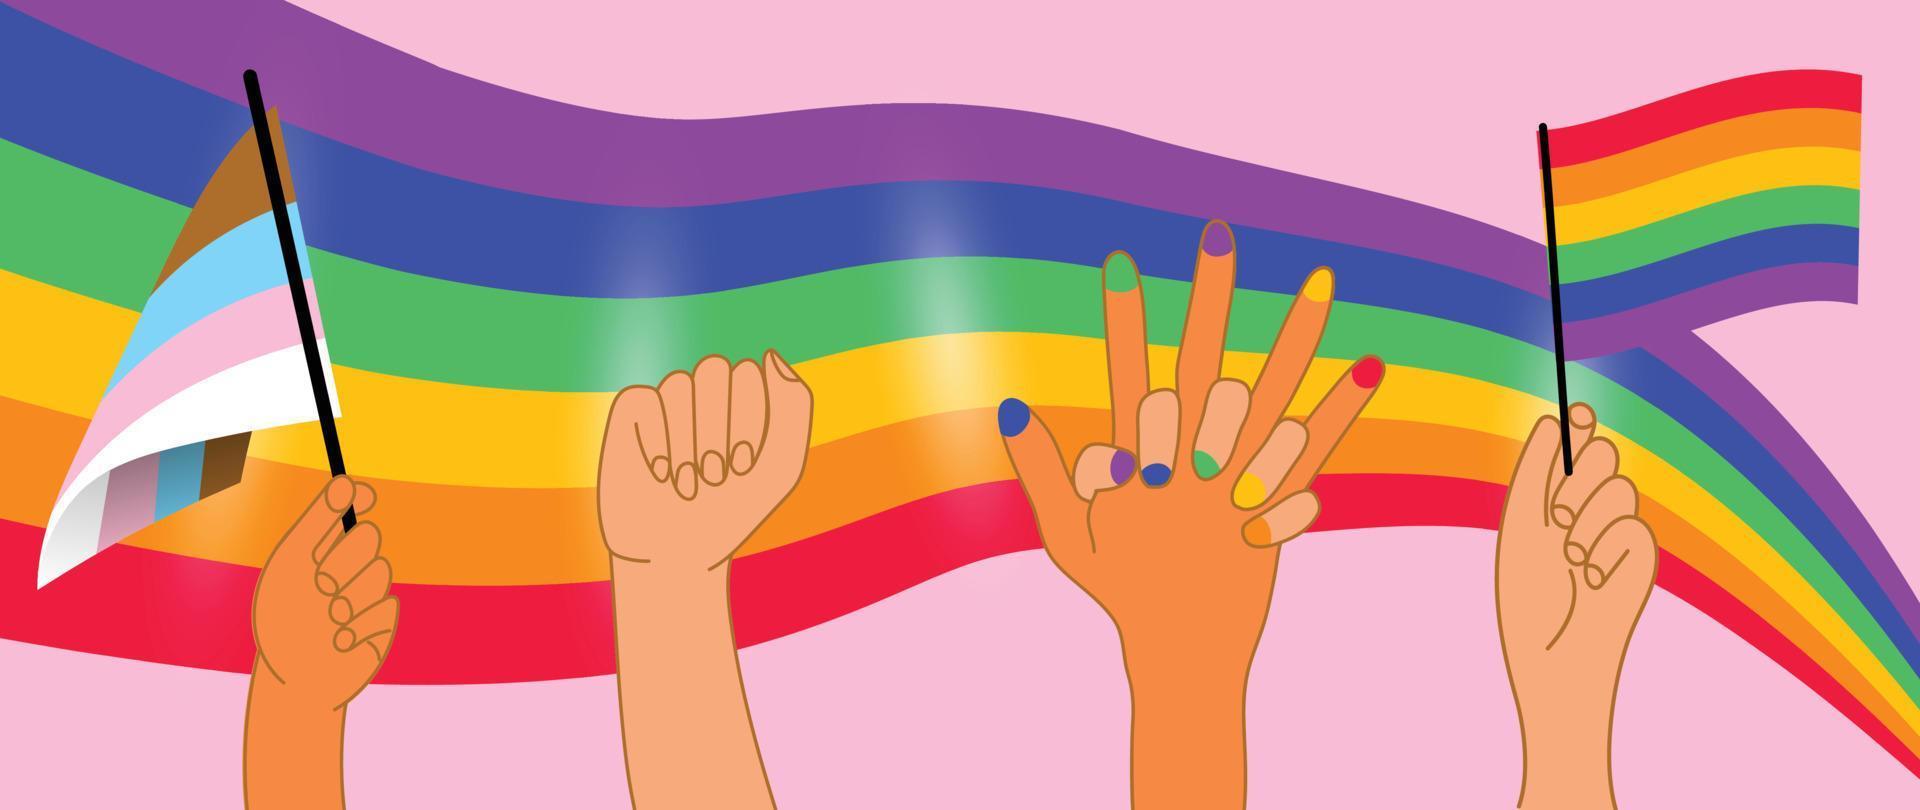 gelukkig trots maand achtergrond. lgbtq gemeenschap symbolen met hand- teken, transgender vlag, trots vlag. ontwerp voor viering tegen geweld, biseksueel, transgender, geslacht gelijkwaardigheid, rechten concept. vector